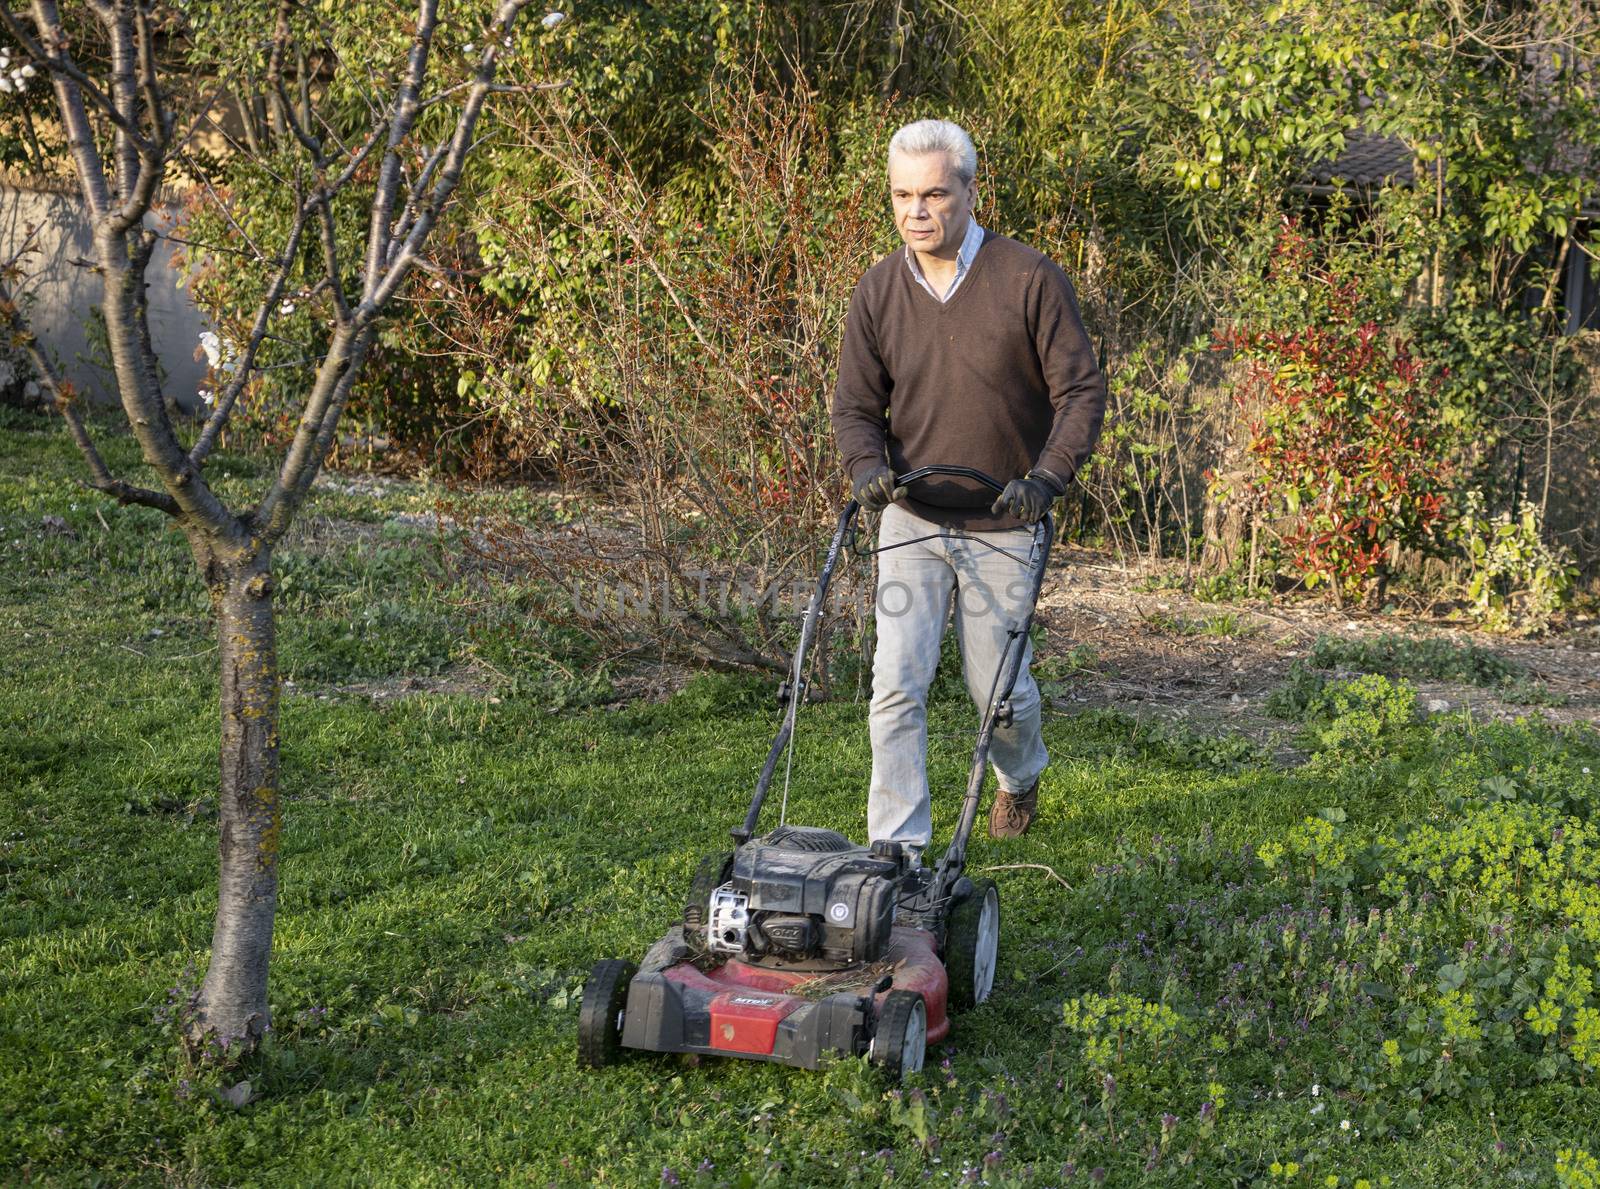 Man with lawnmower by cynoclub